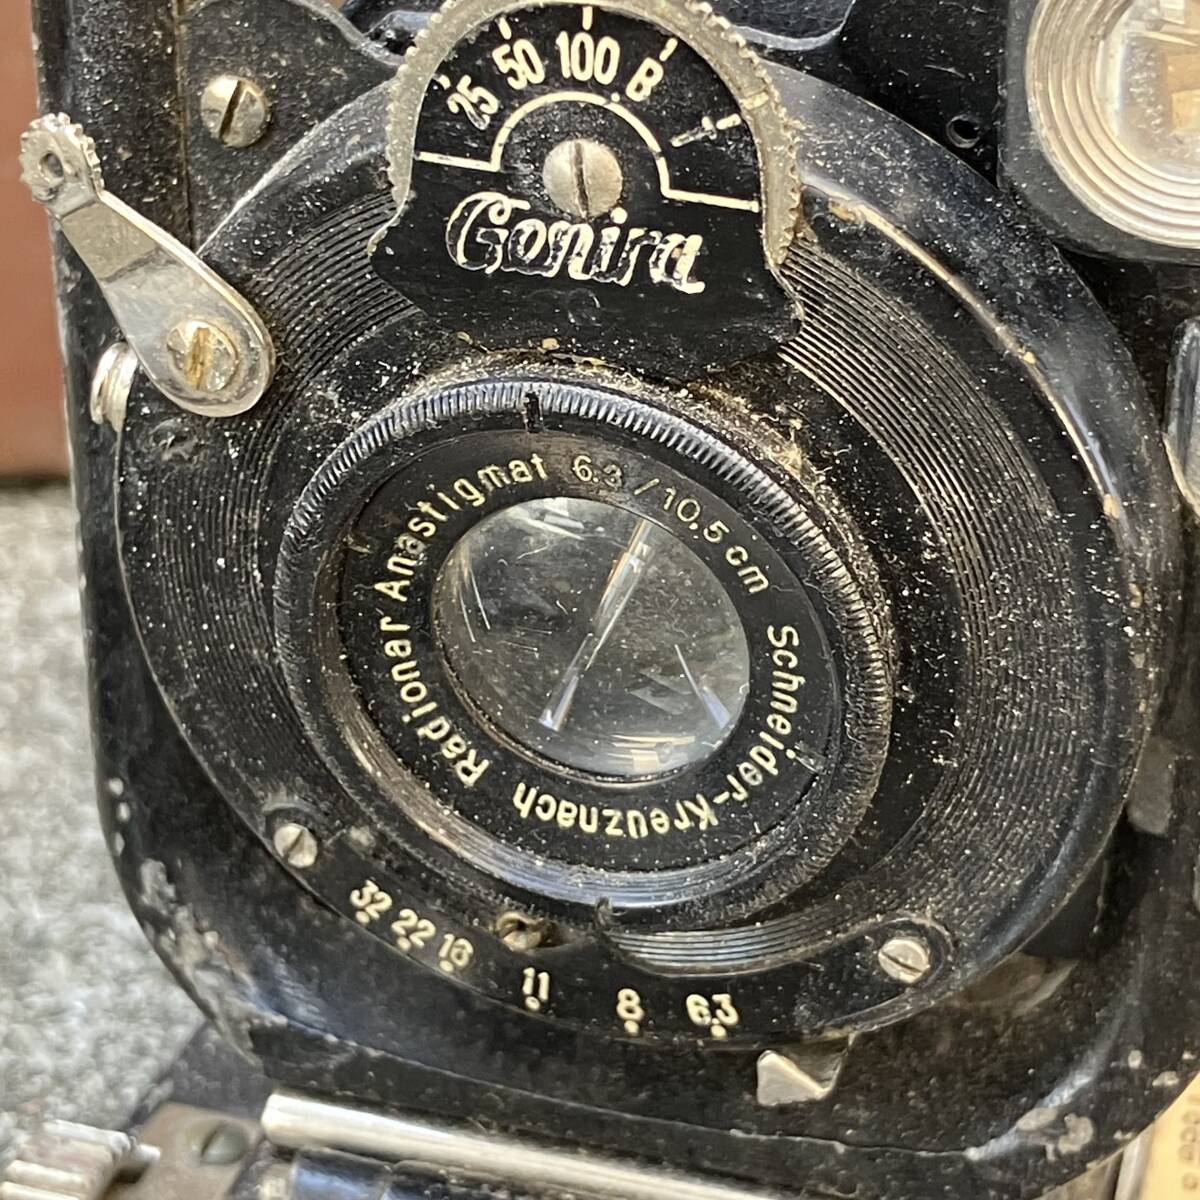  античный камера ju роза камера подробности неизвестен кожаный с футляром работоспособность не проверялась Junk 